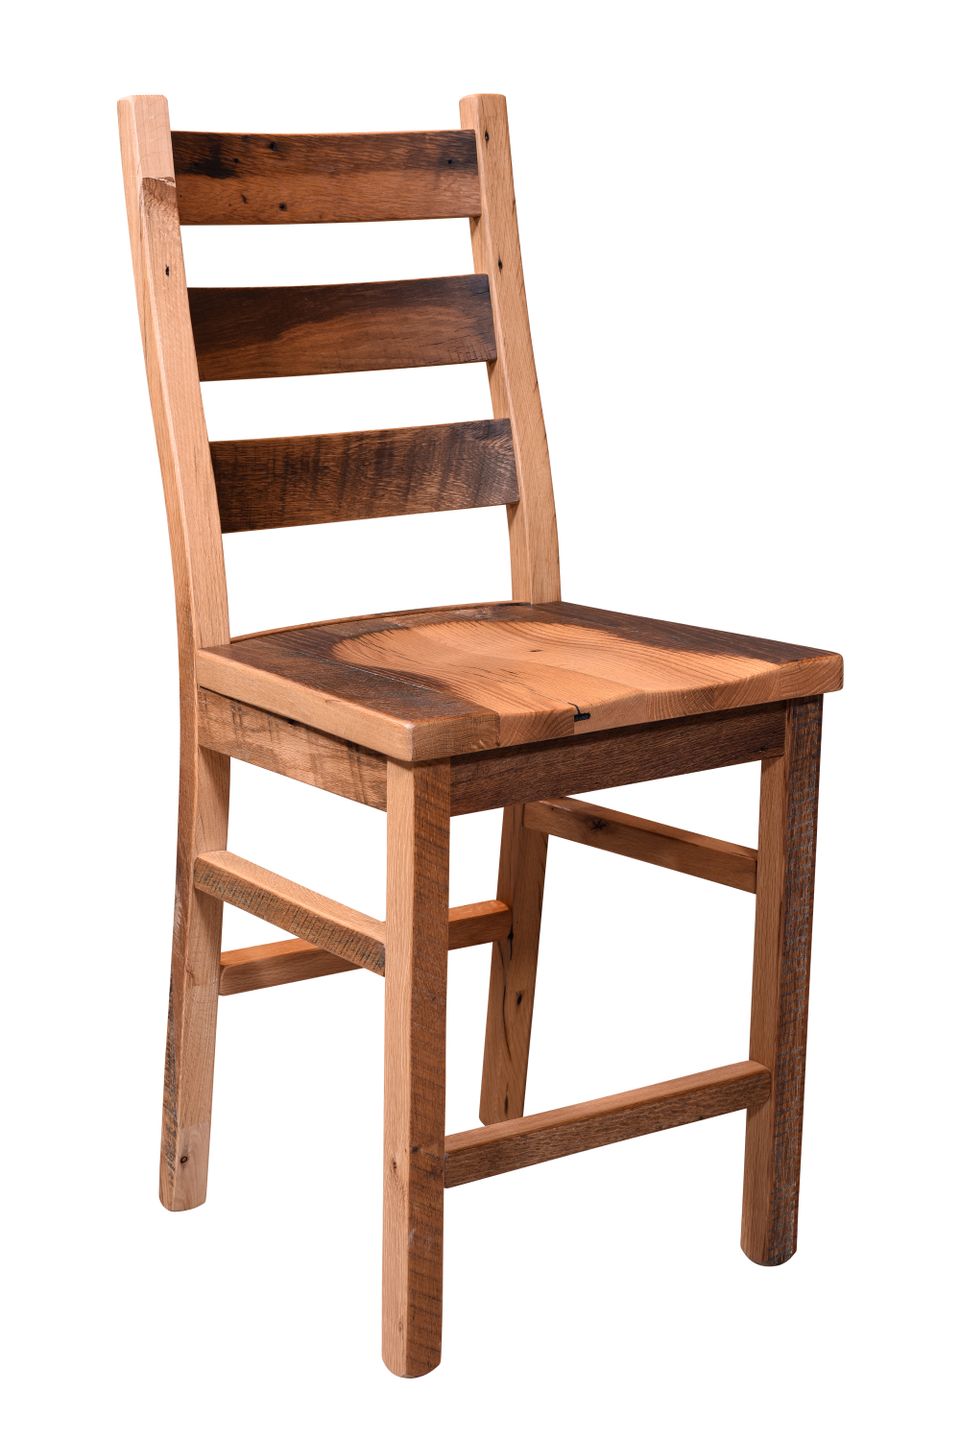 Ubw ladderback bar chair